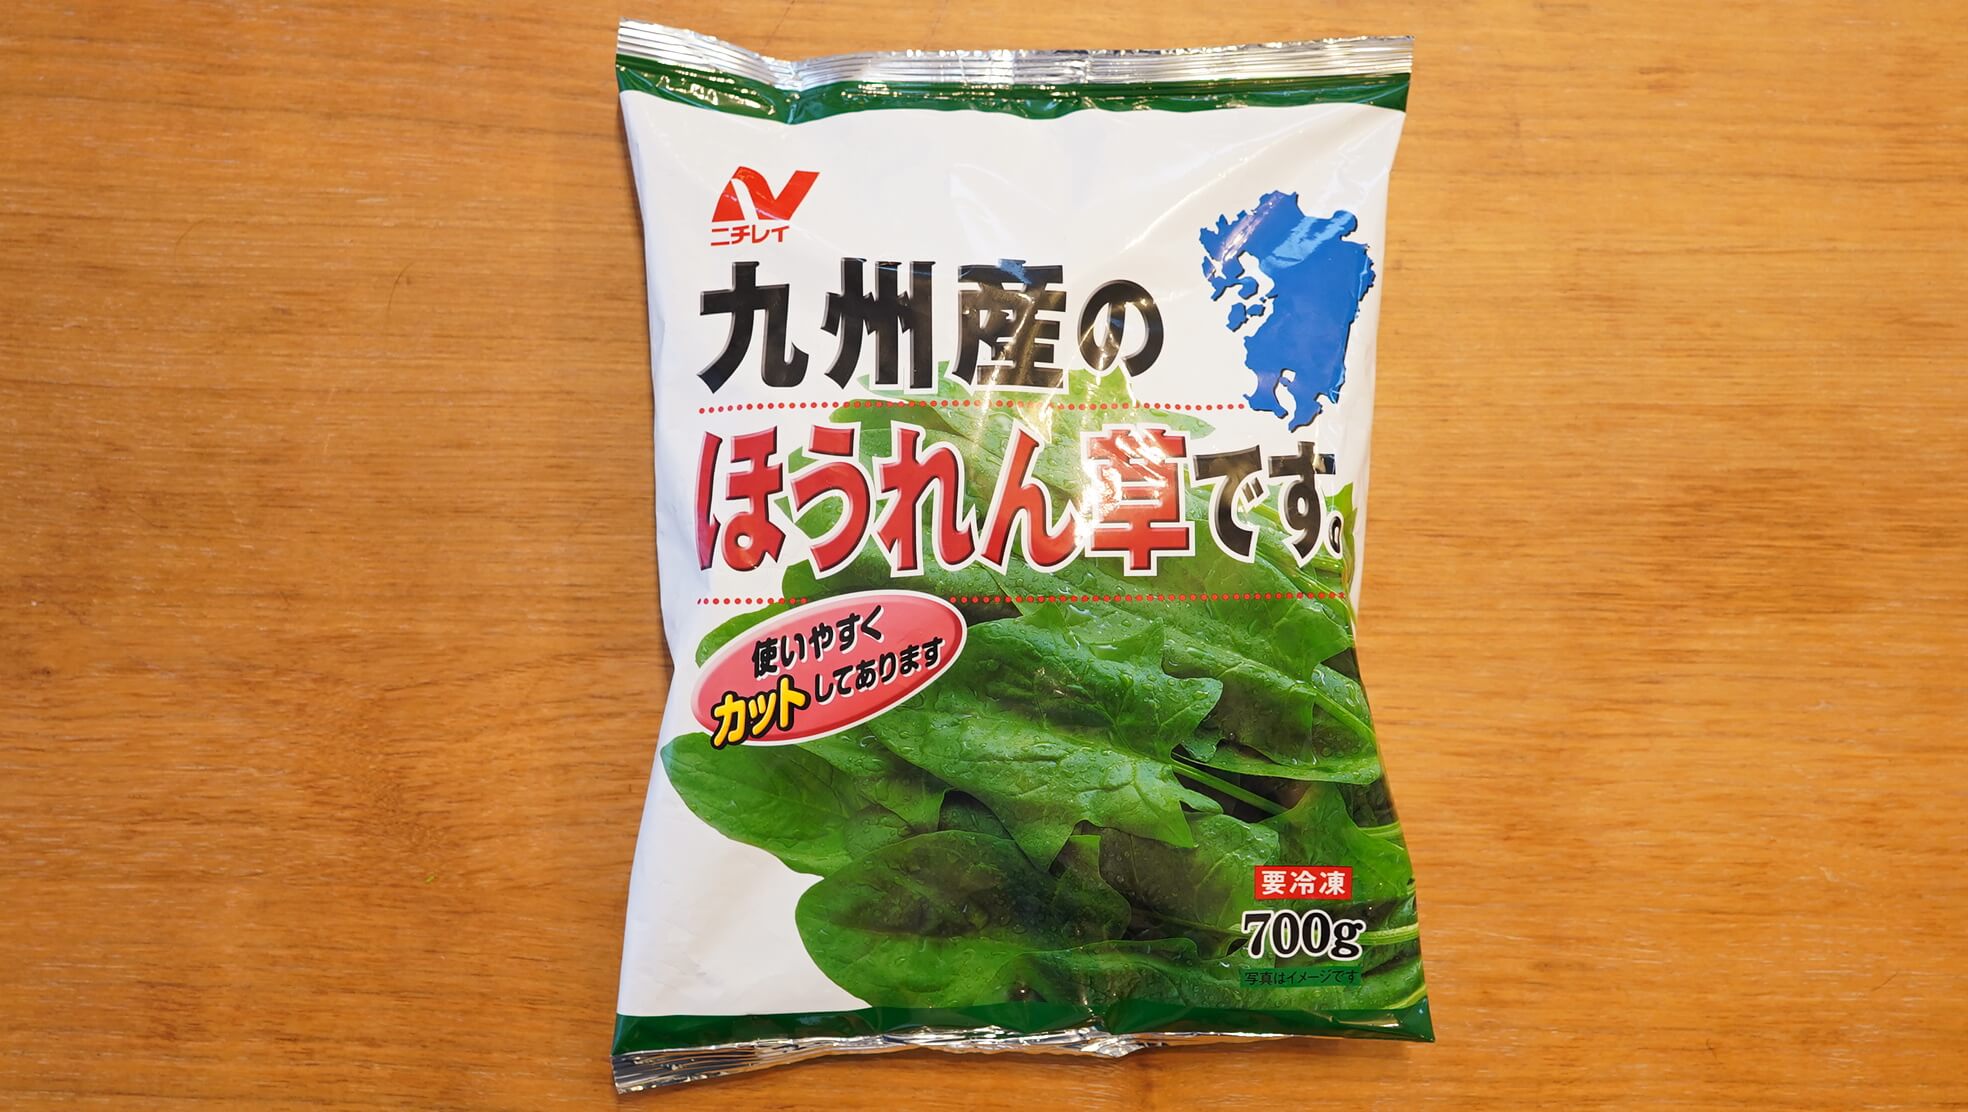 コストコのおすすめ冷凍食品ニチレイ「九州産のほうれん草です。」のパッケージ写真